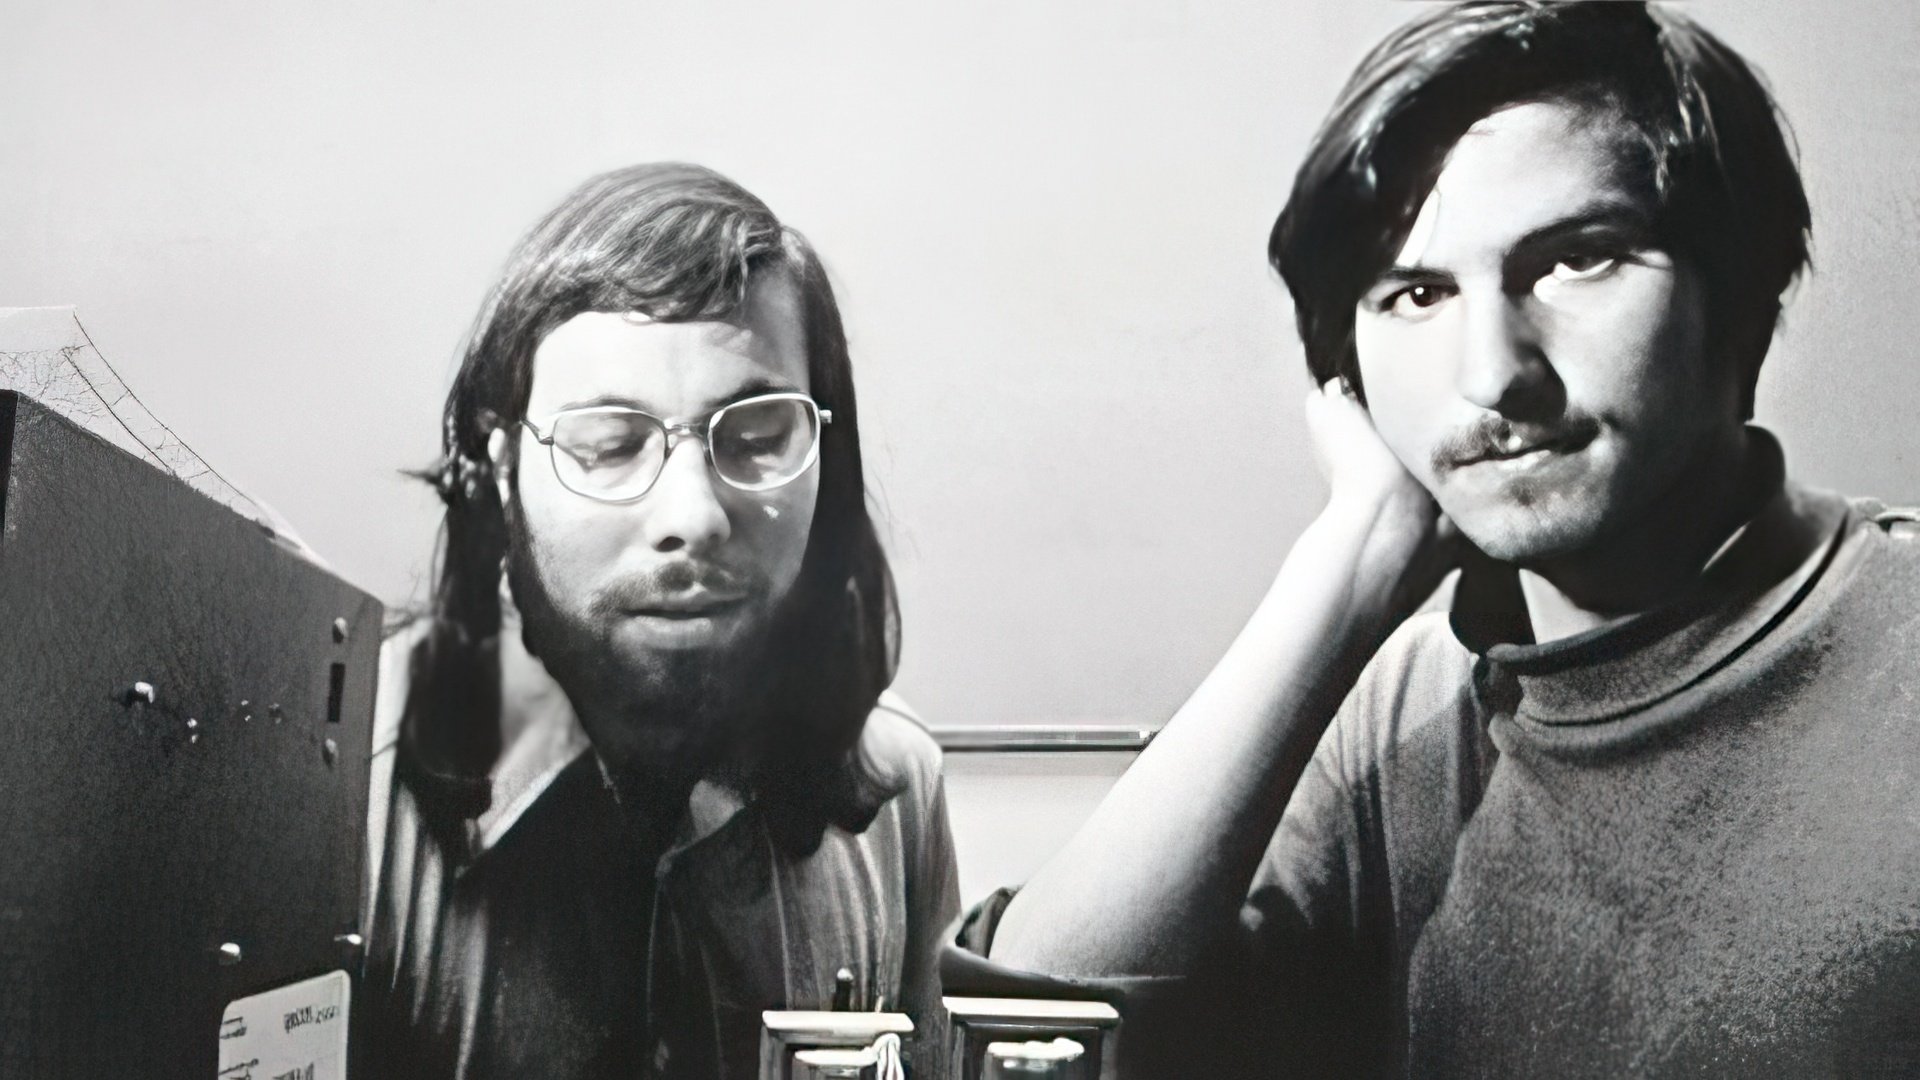 Steve Jobs and Steven Wozniak